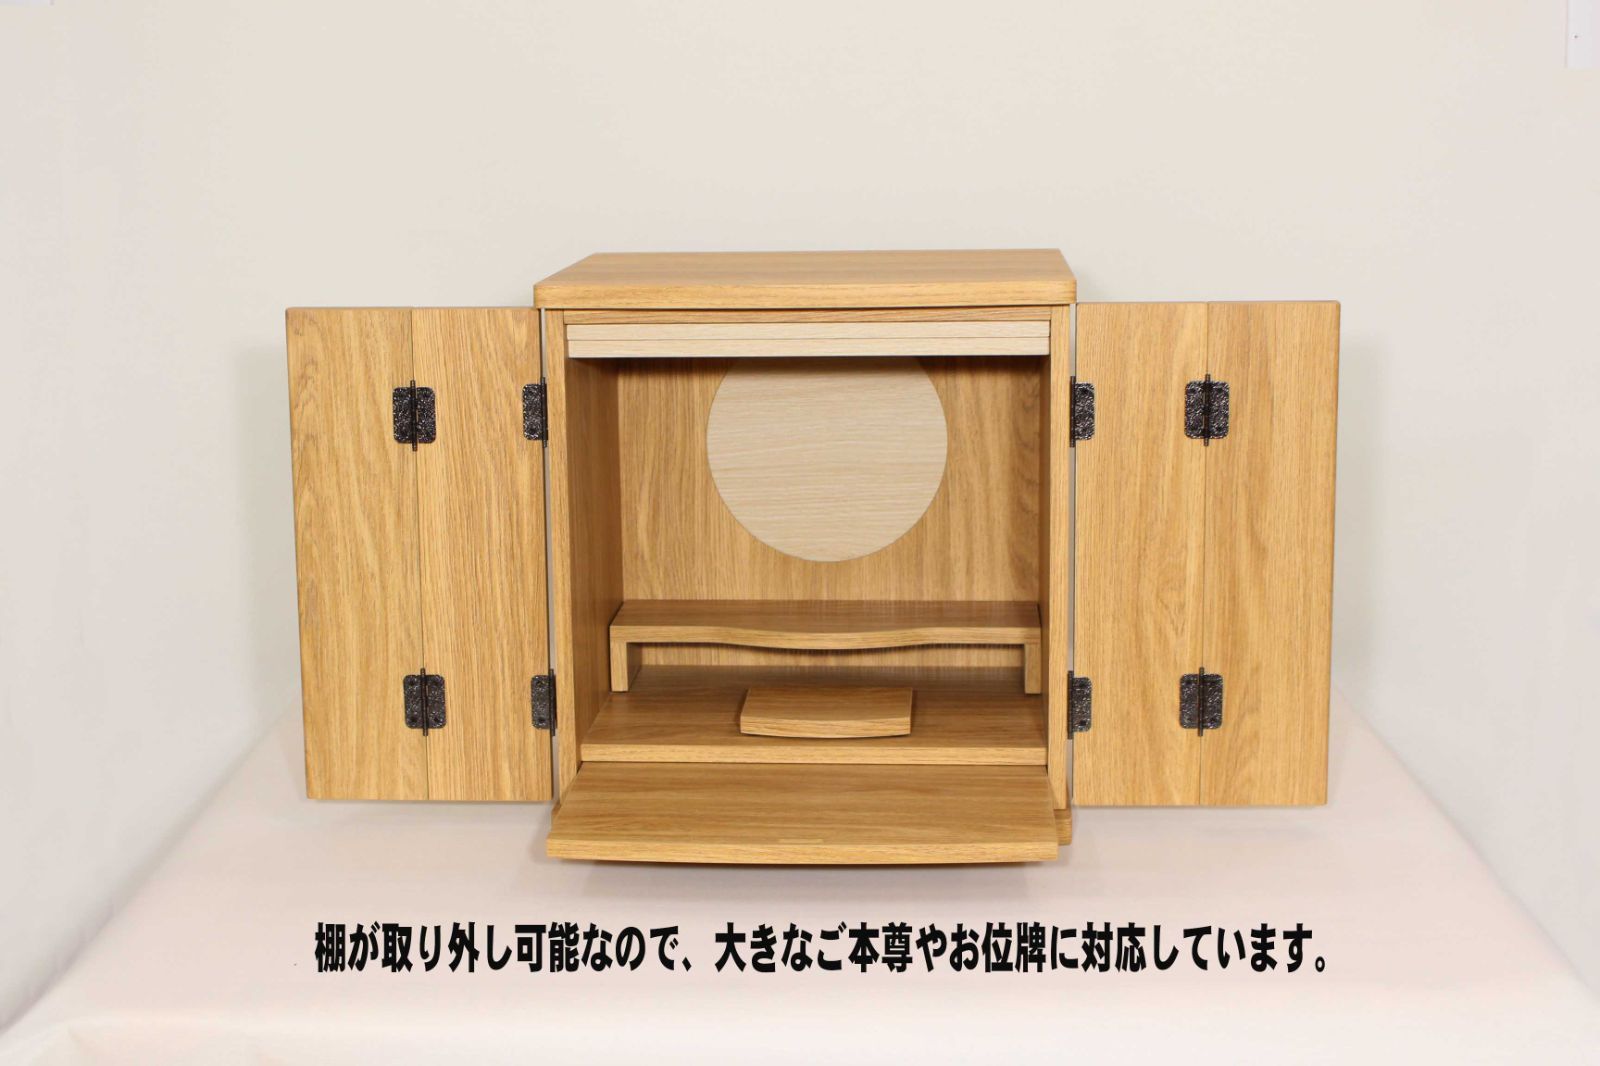 インテリア仏壇 仏壇 ミニサイズ ミニ仏壇 木製 インテリア家具